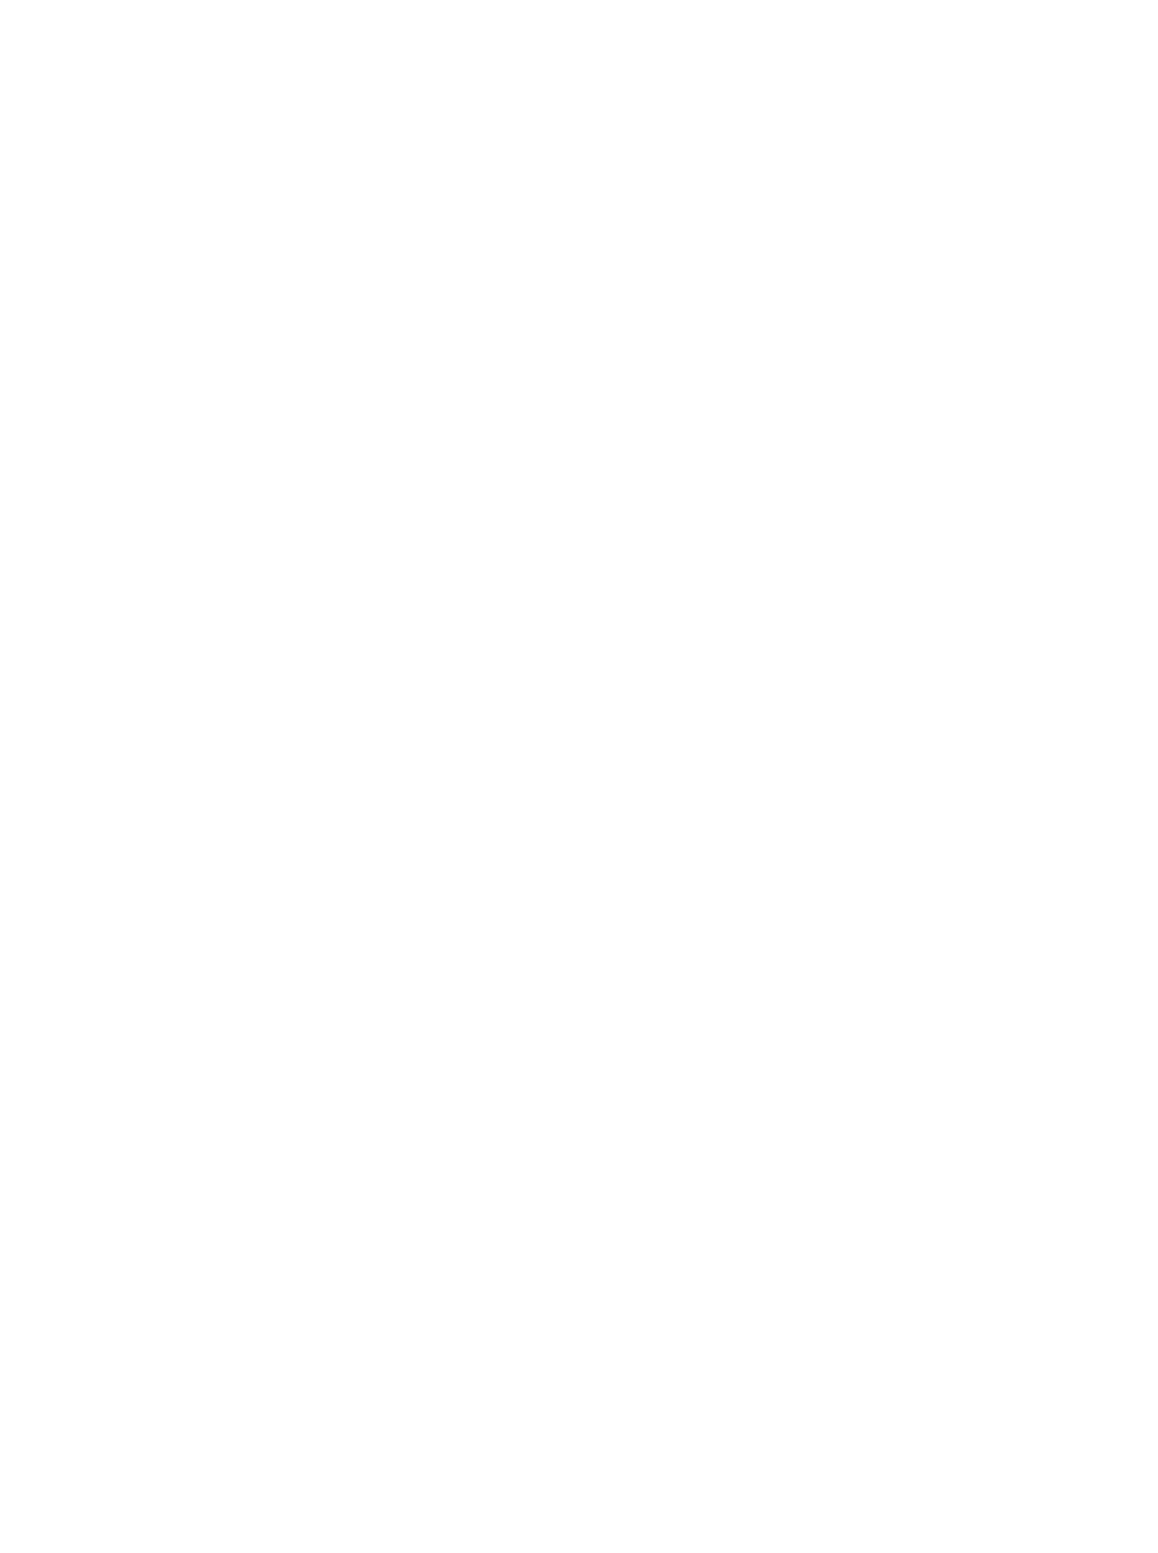 Kforce logo for dark backgrounds (transparent PNG)